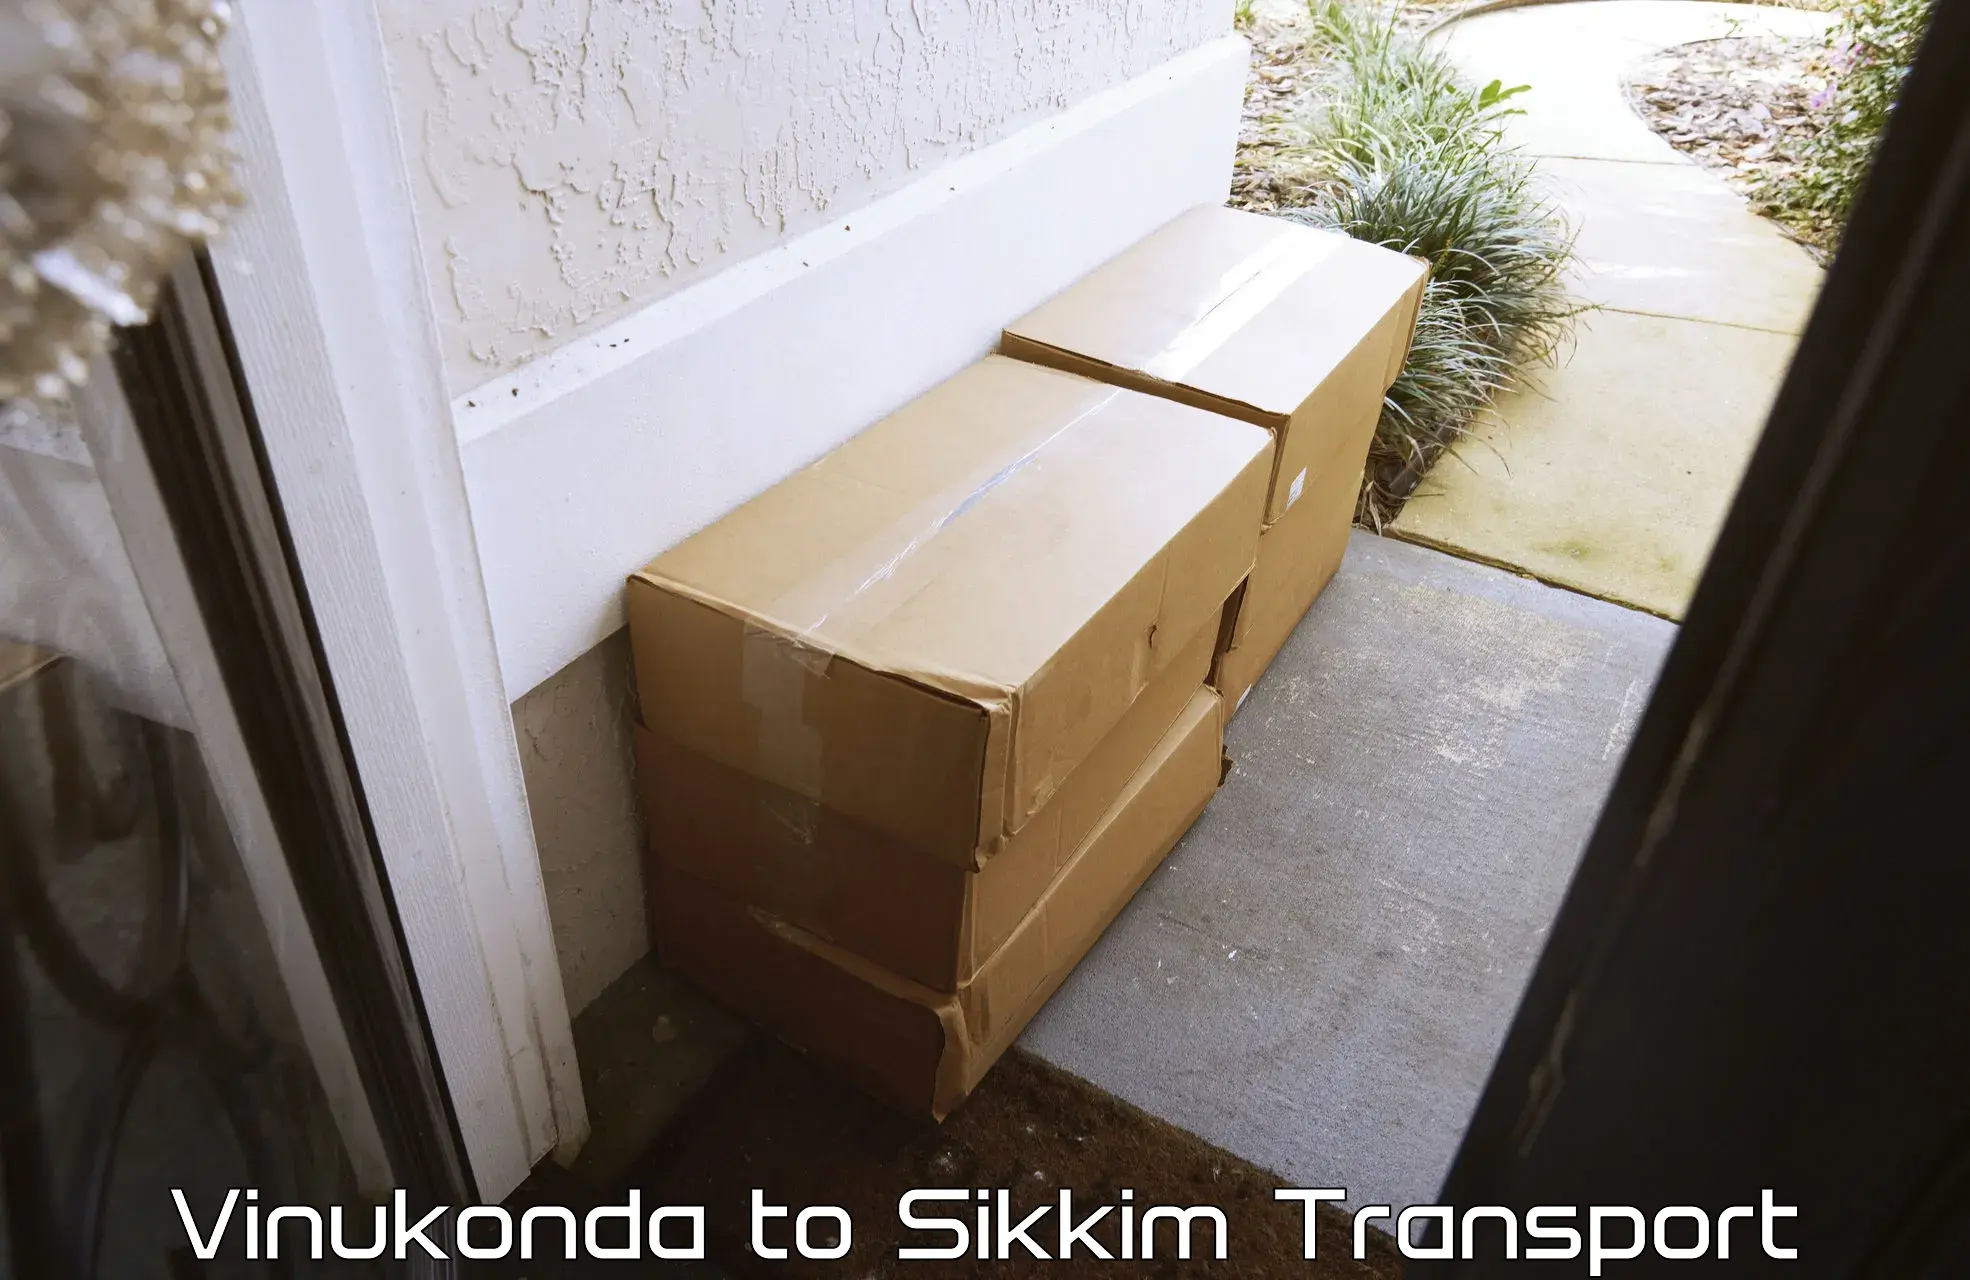 Furniture transport service Vinukonda to Mangan